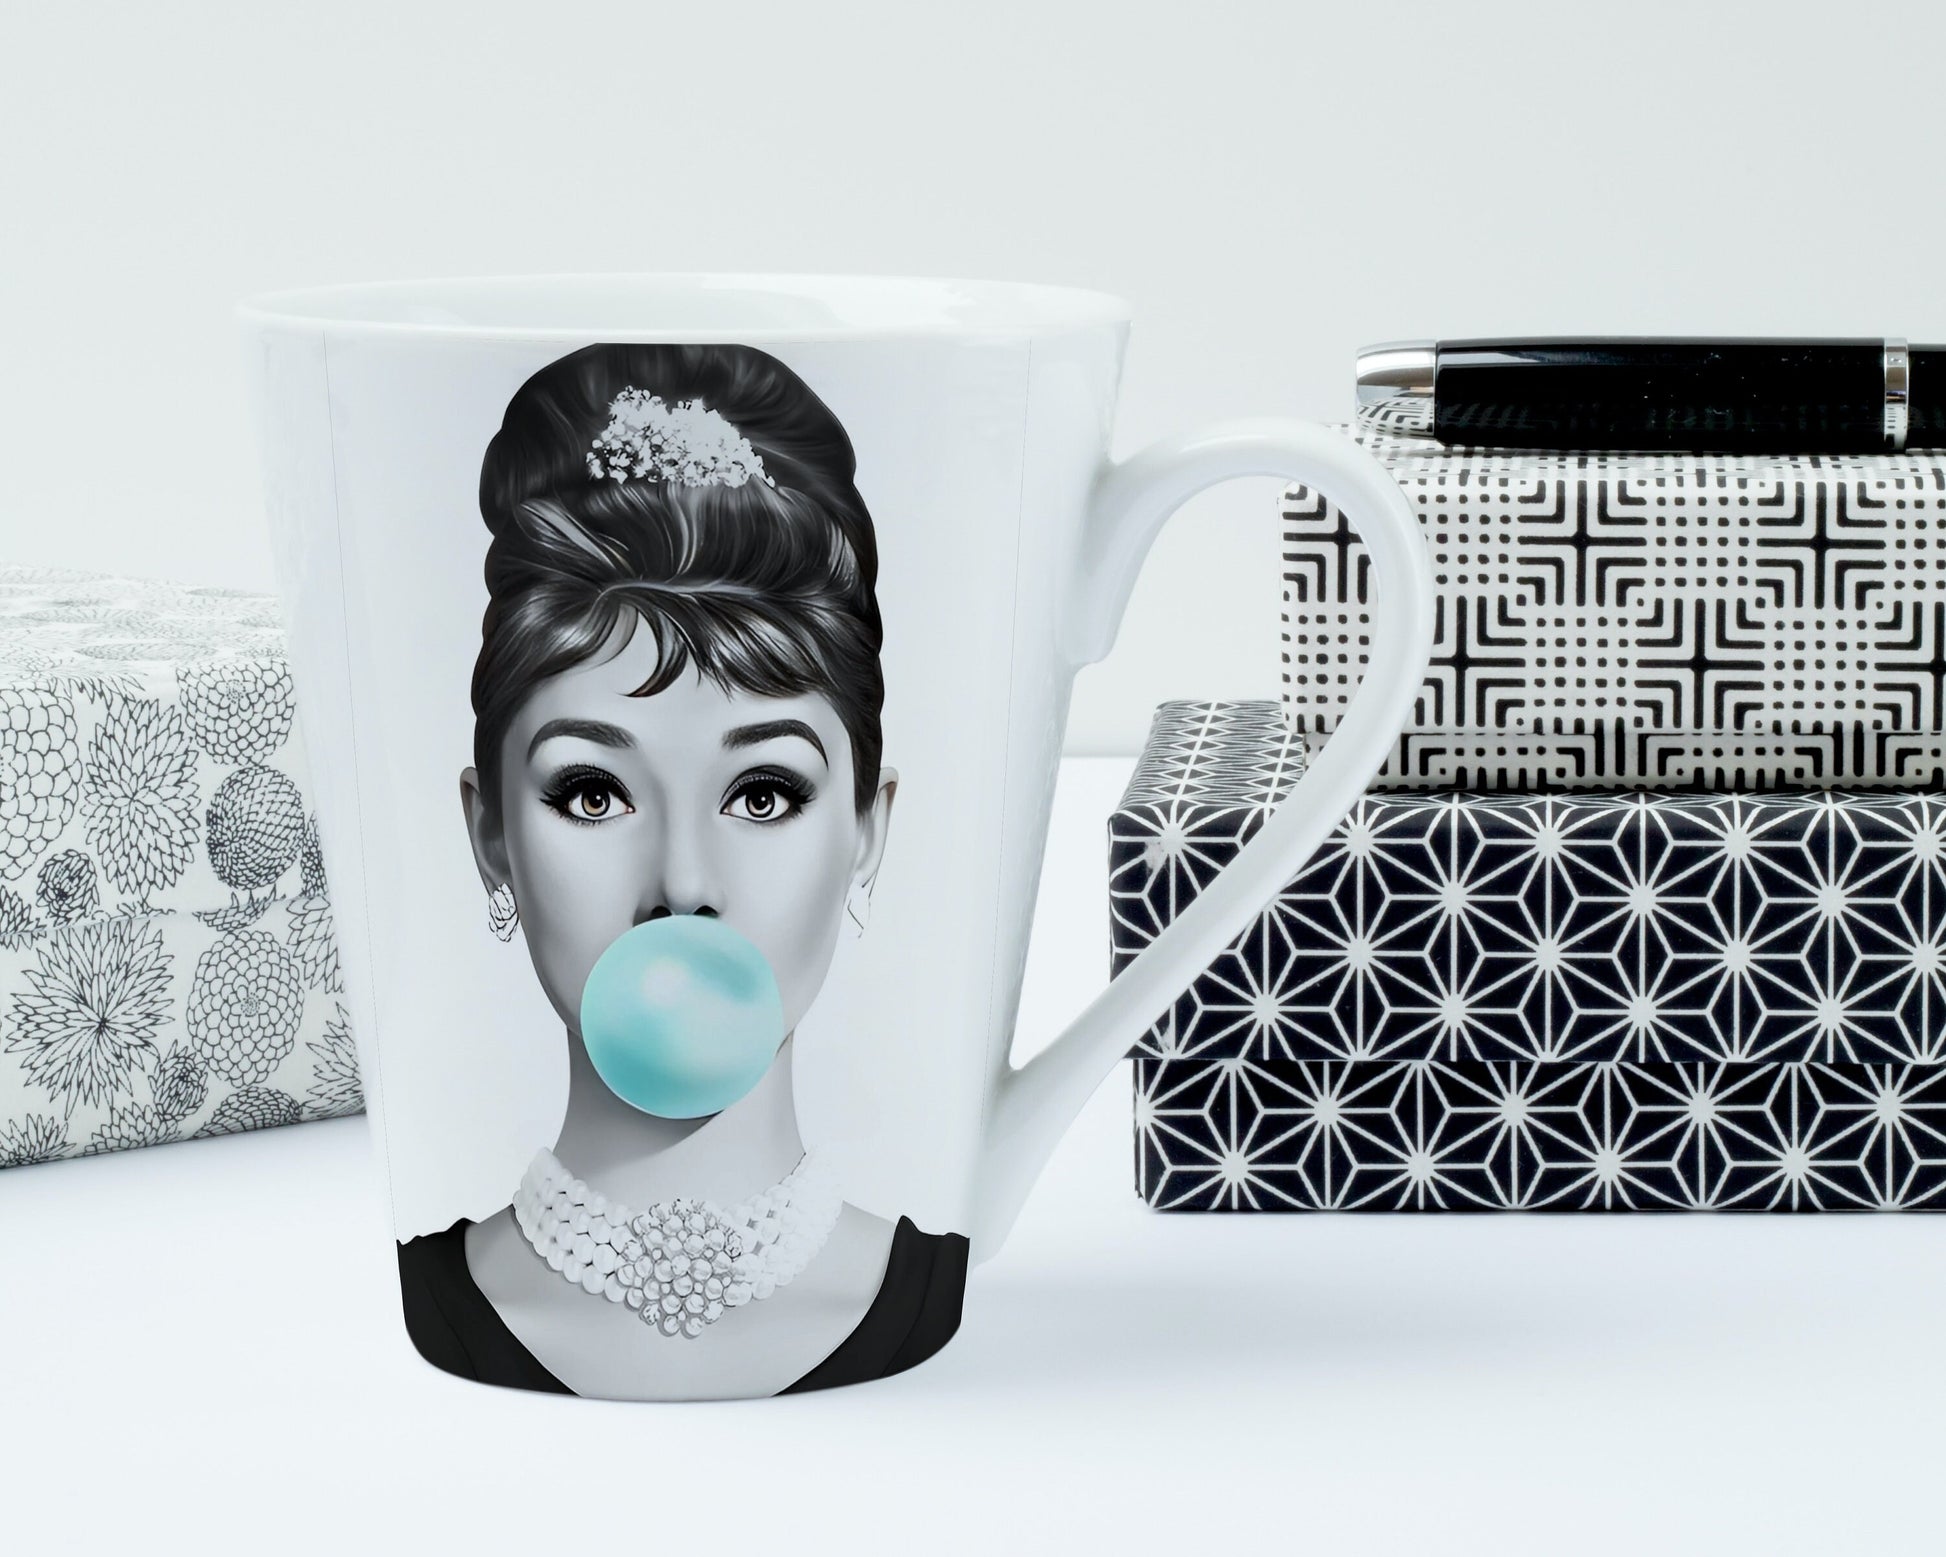 Audrey Hepburn Bubble Gum Print INSTANT DOWNLOAD, Fashion Posters, Black and White Prints, Famous Woman Canvas Print, Pop Art, Glam Decor